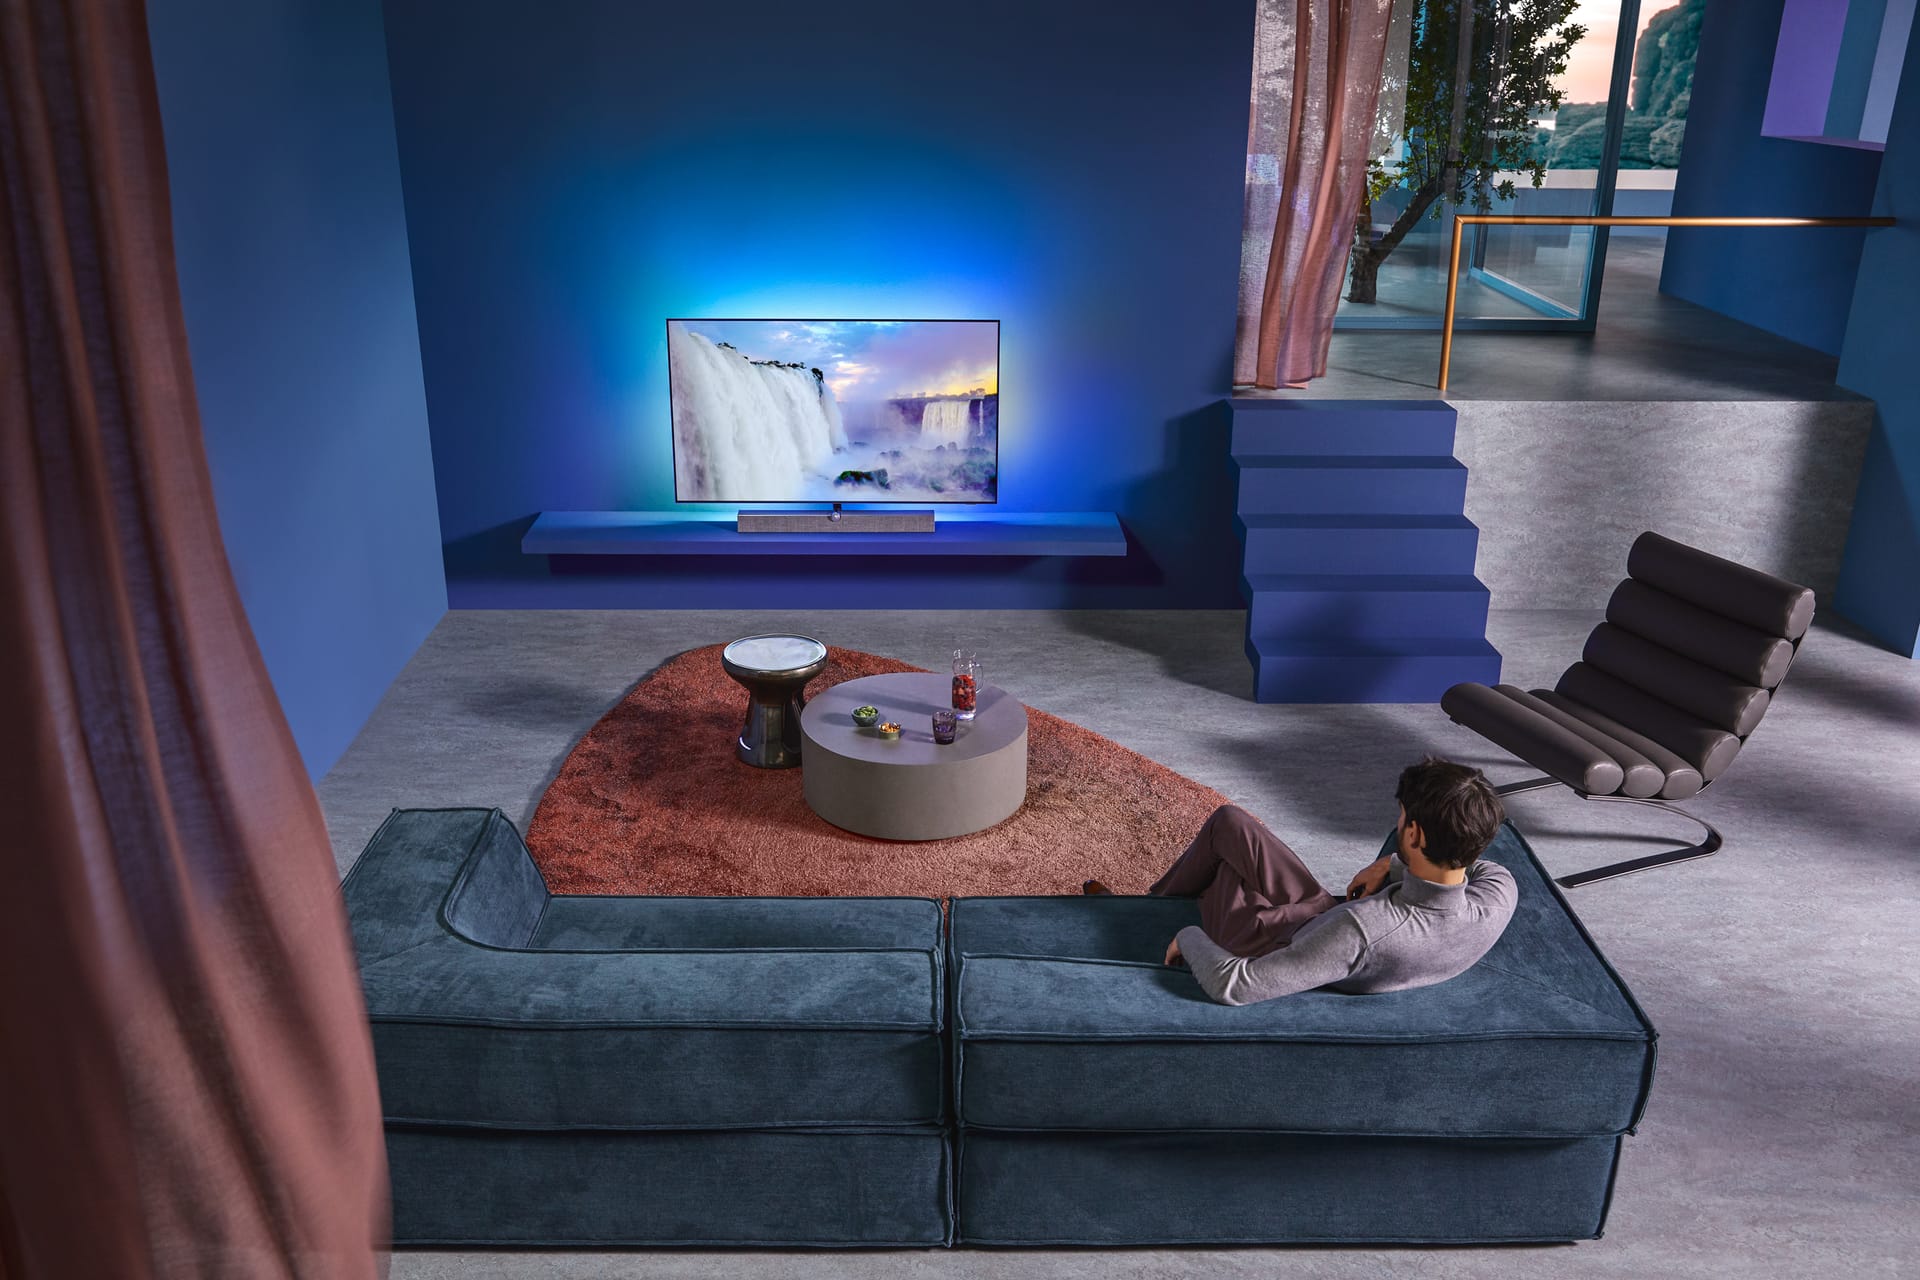 Philips TV taucht den Raum dank Ambilight in die zum Bild passenden Farben